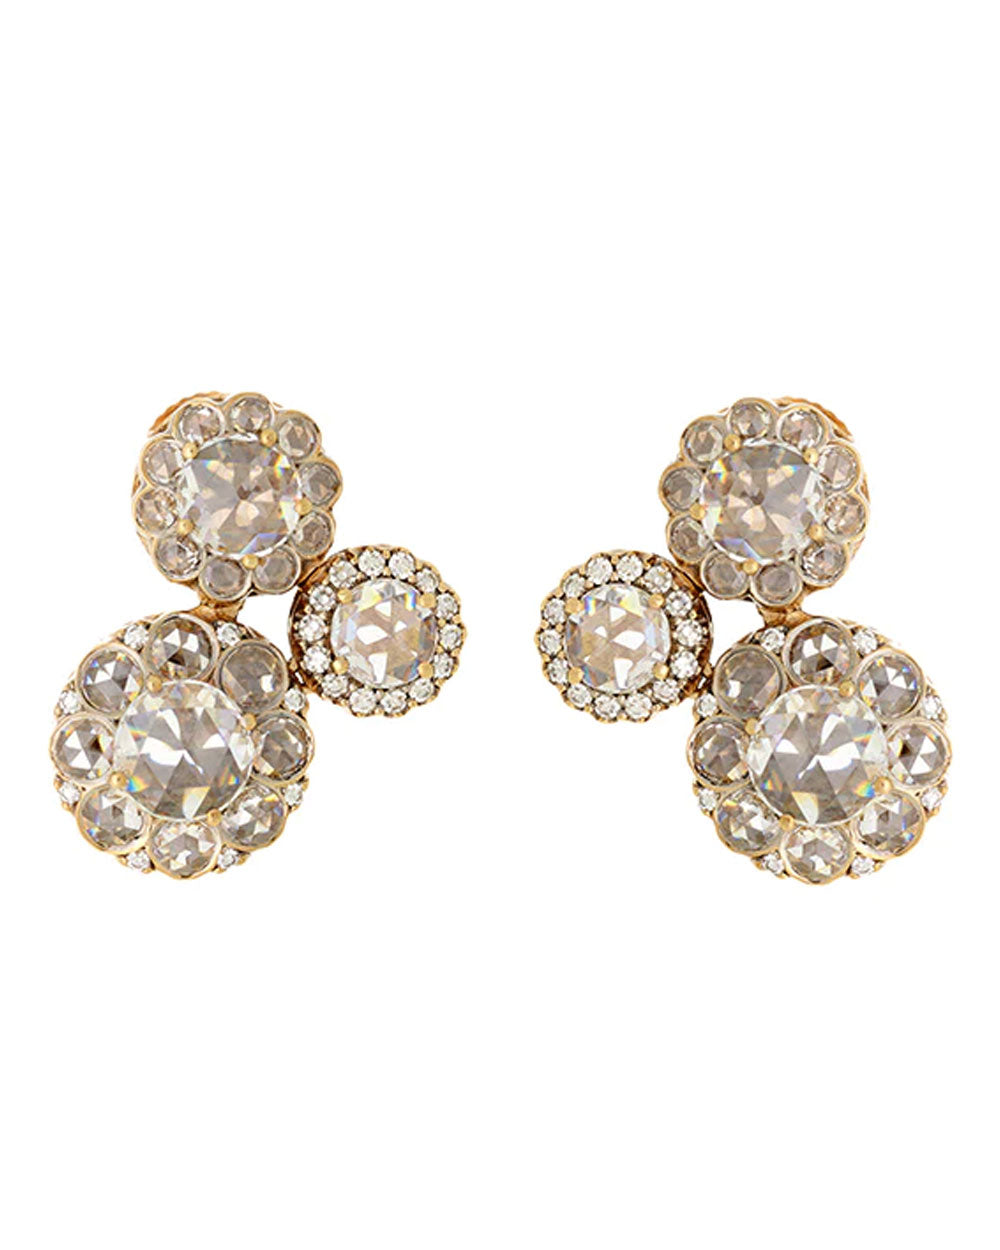 Beirut Rosace Diamond Earrings